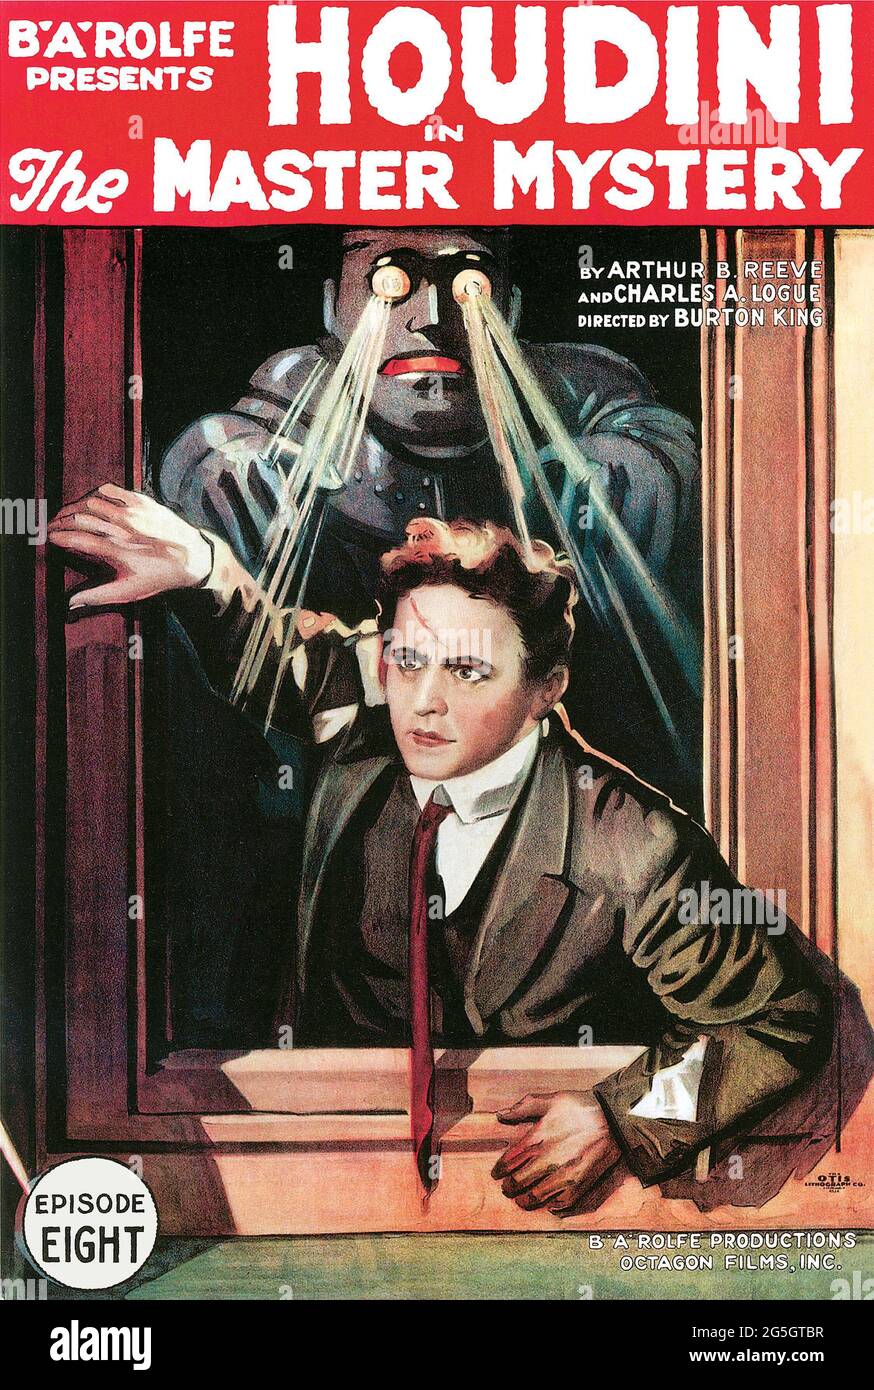 Harry Houdini, 1919 cartel de la película – El Misterio Maestro es una película de serie silenciosa del misterio americano de 1918-1919 contada en 15 entregas. Foto de stock